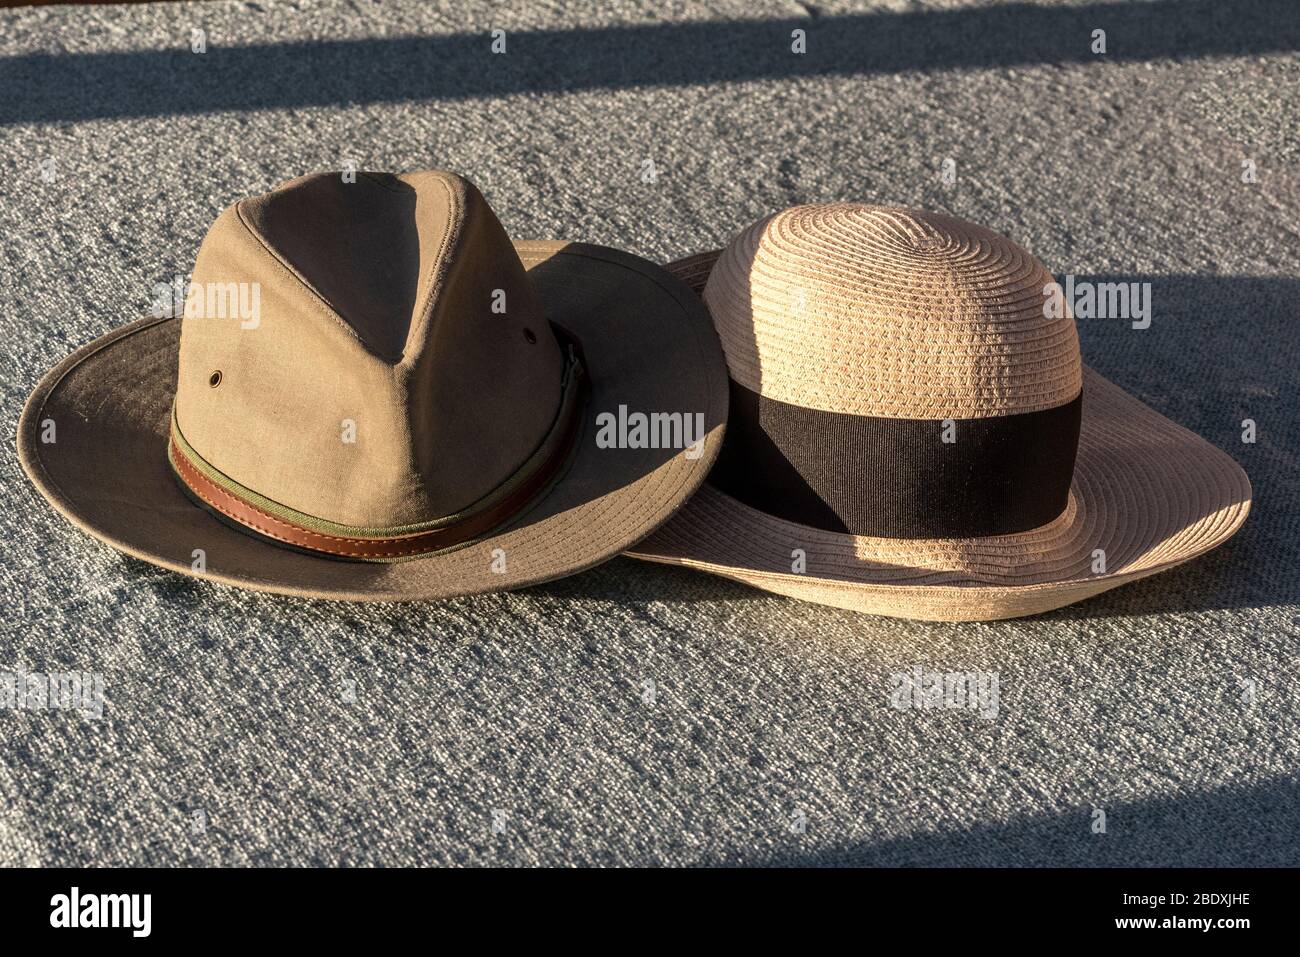 La unión. Un par de sombreros de sol. Foto de stock